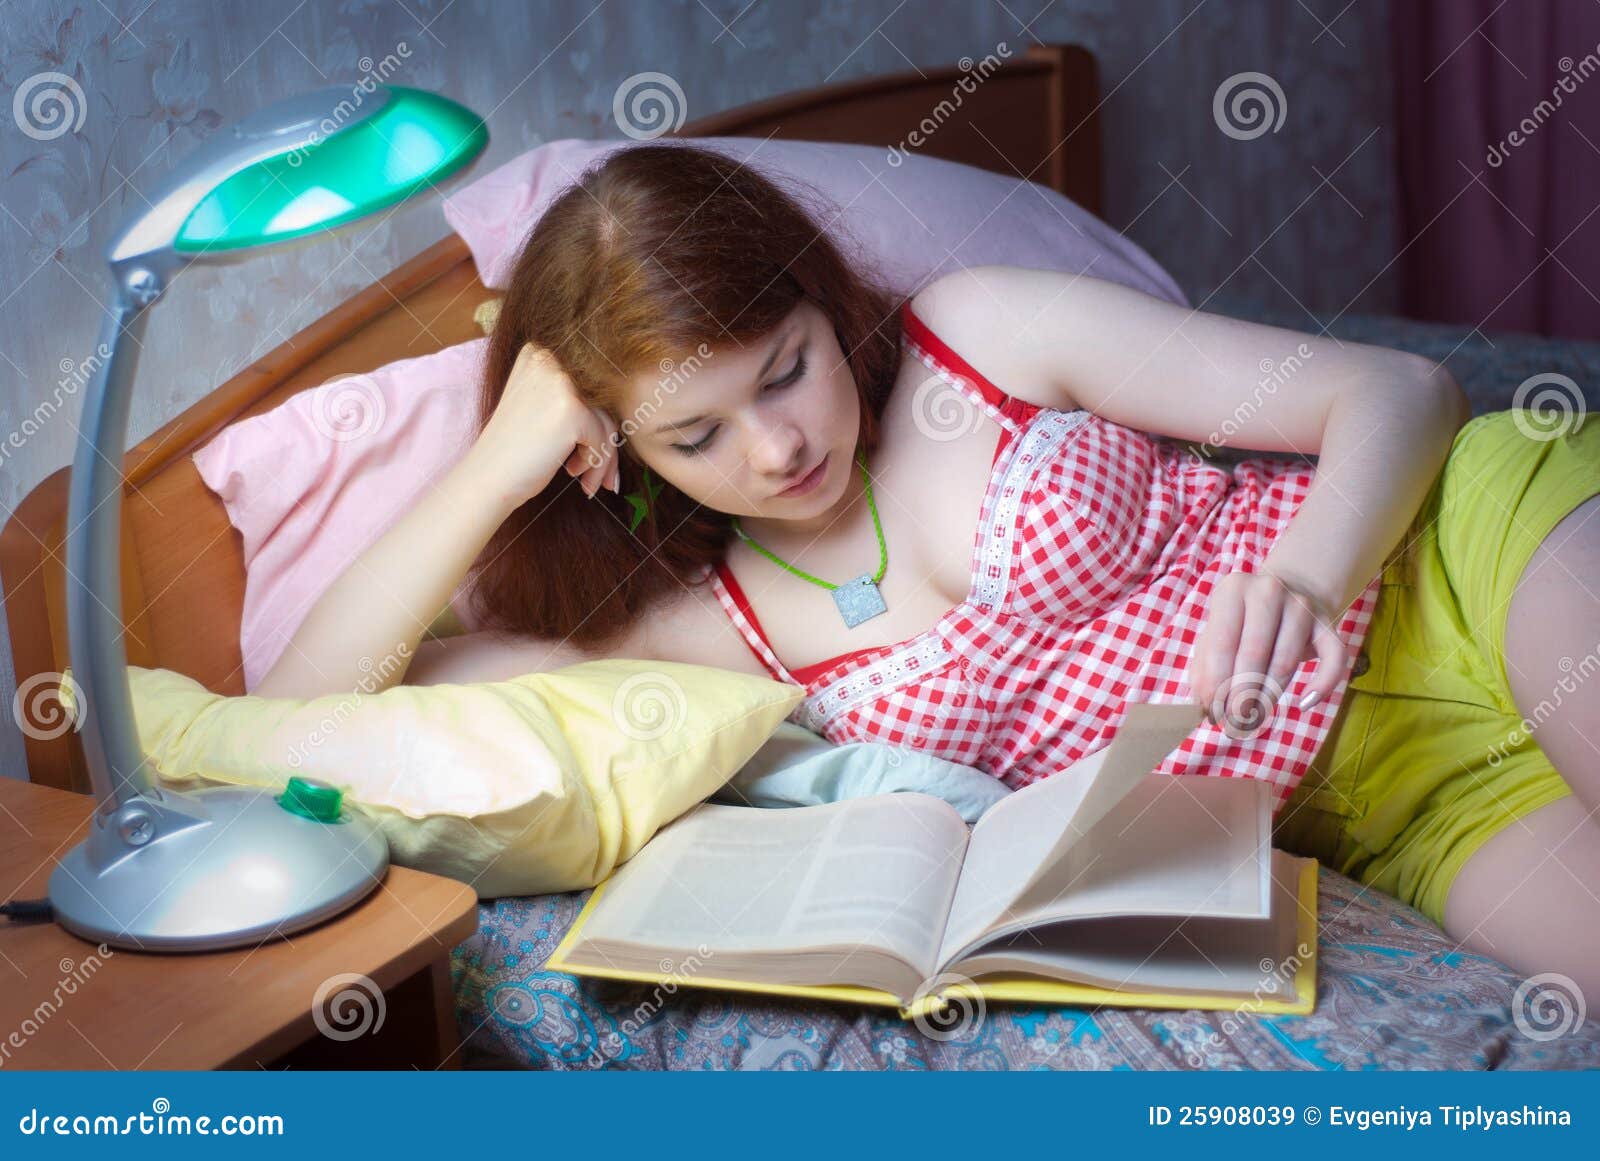 Девушка читает на вибраторе. Чтение лежа. Девочка ученица лежит на кровати. Девушка читает в кровати.